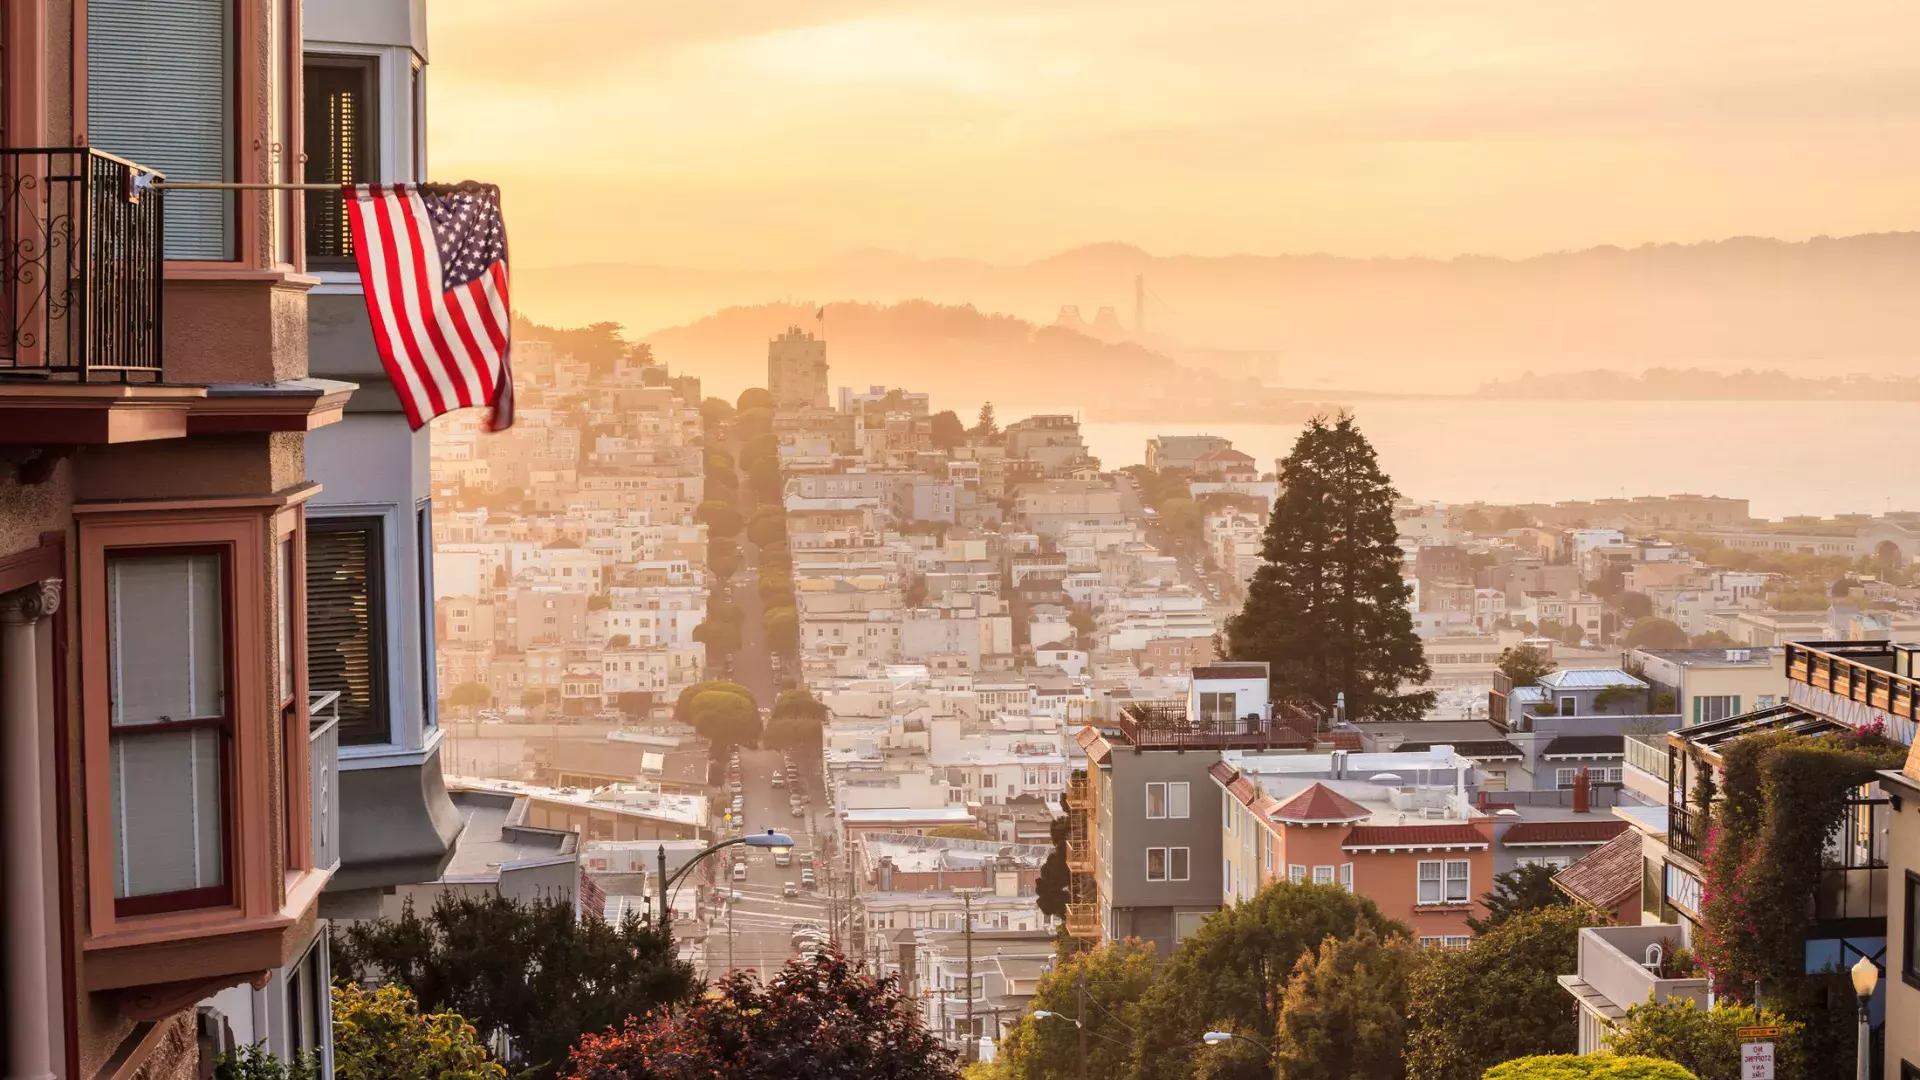 丘の上から見たサンフランシスコの眺め。前景にはアメリカの国旗がはためいています。